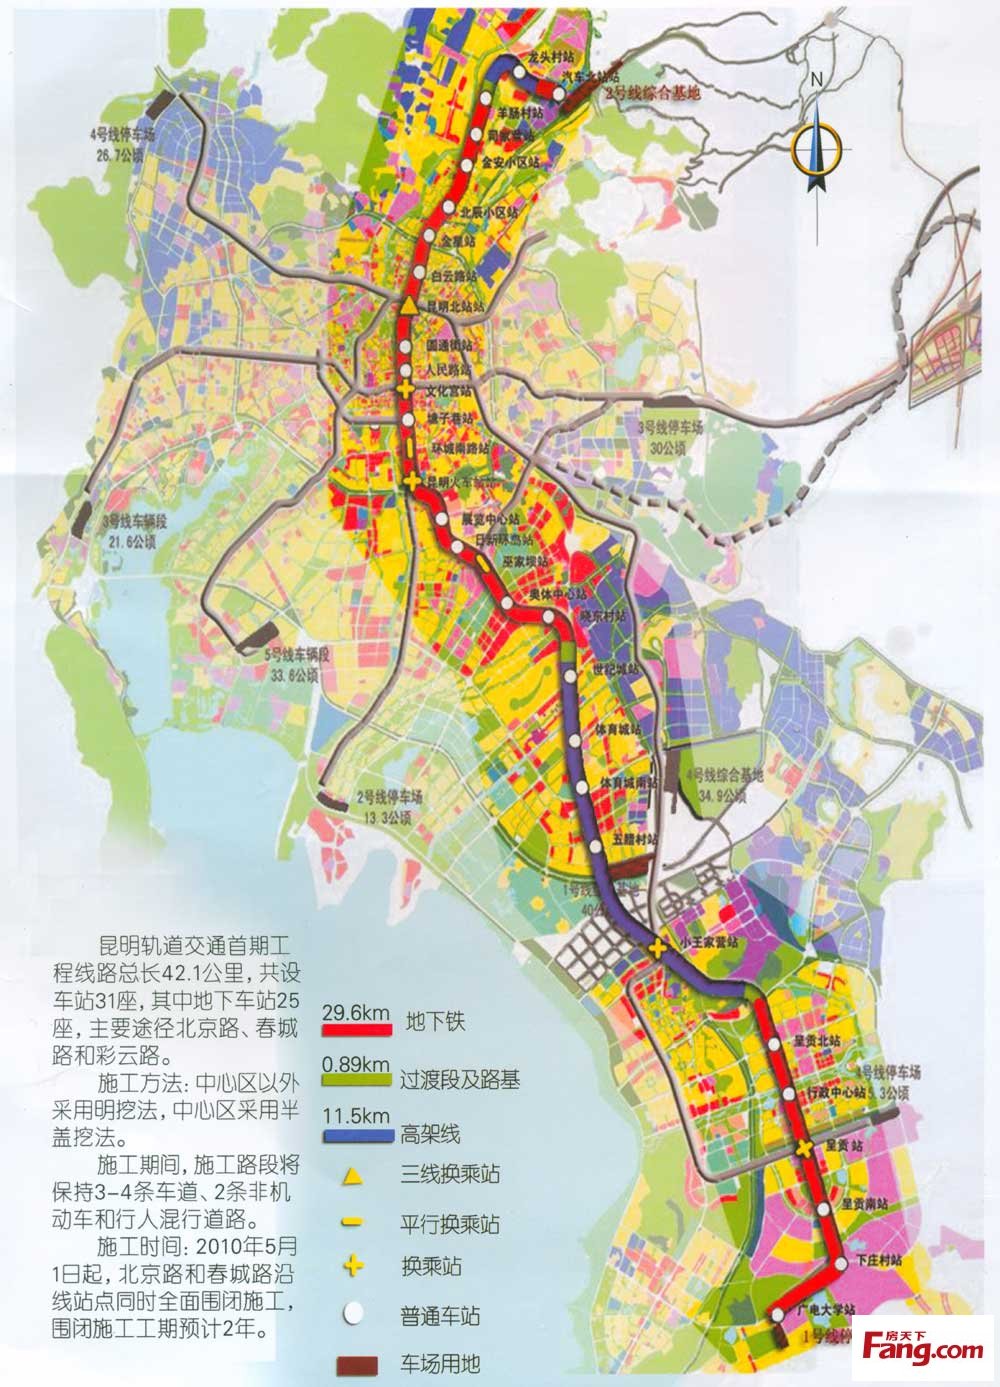 昆明轨道交通的远景规划（2020-2030）（昆明轨道交通车辆配件）